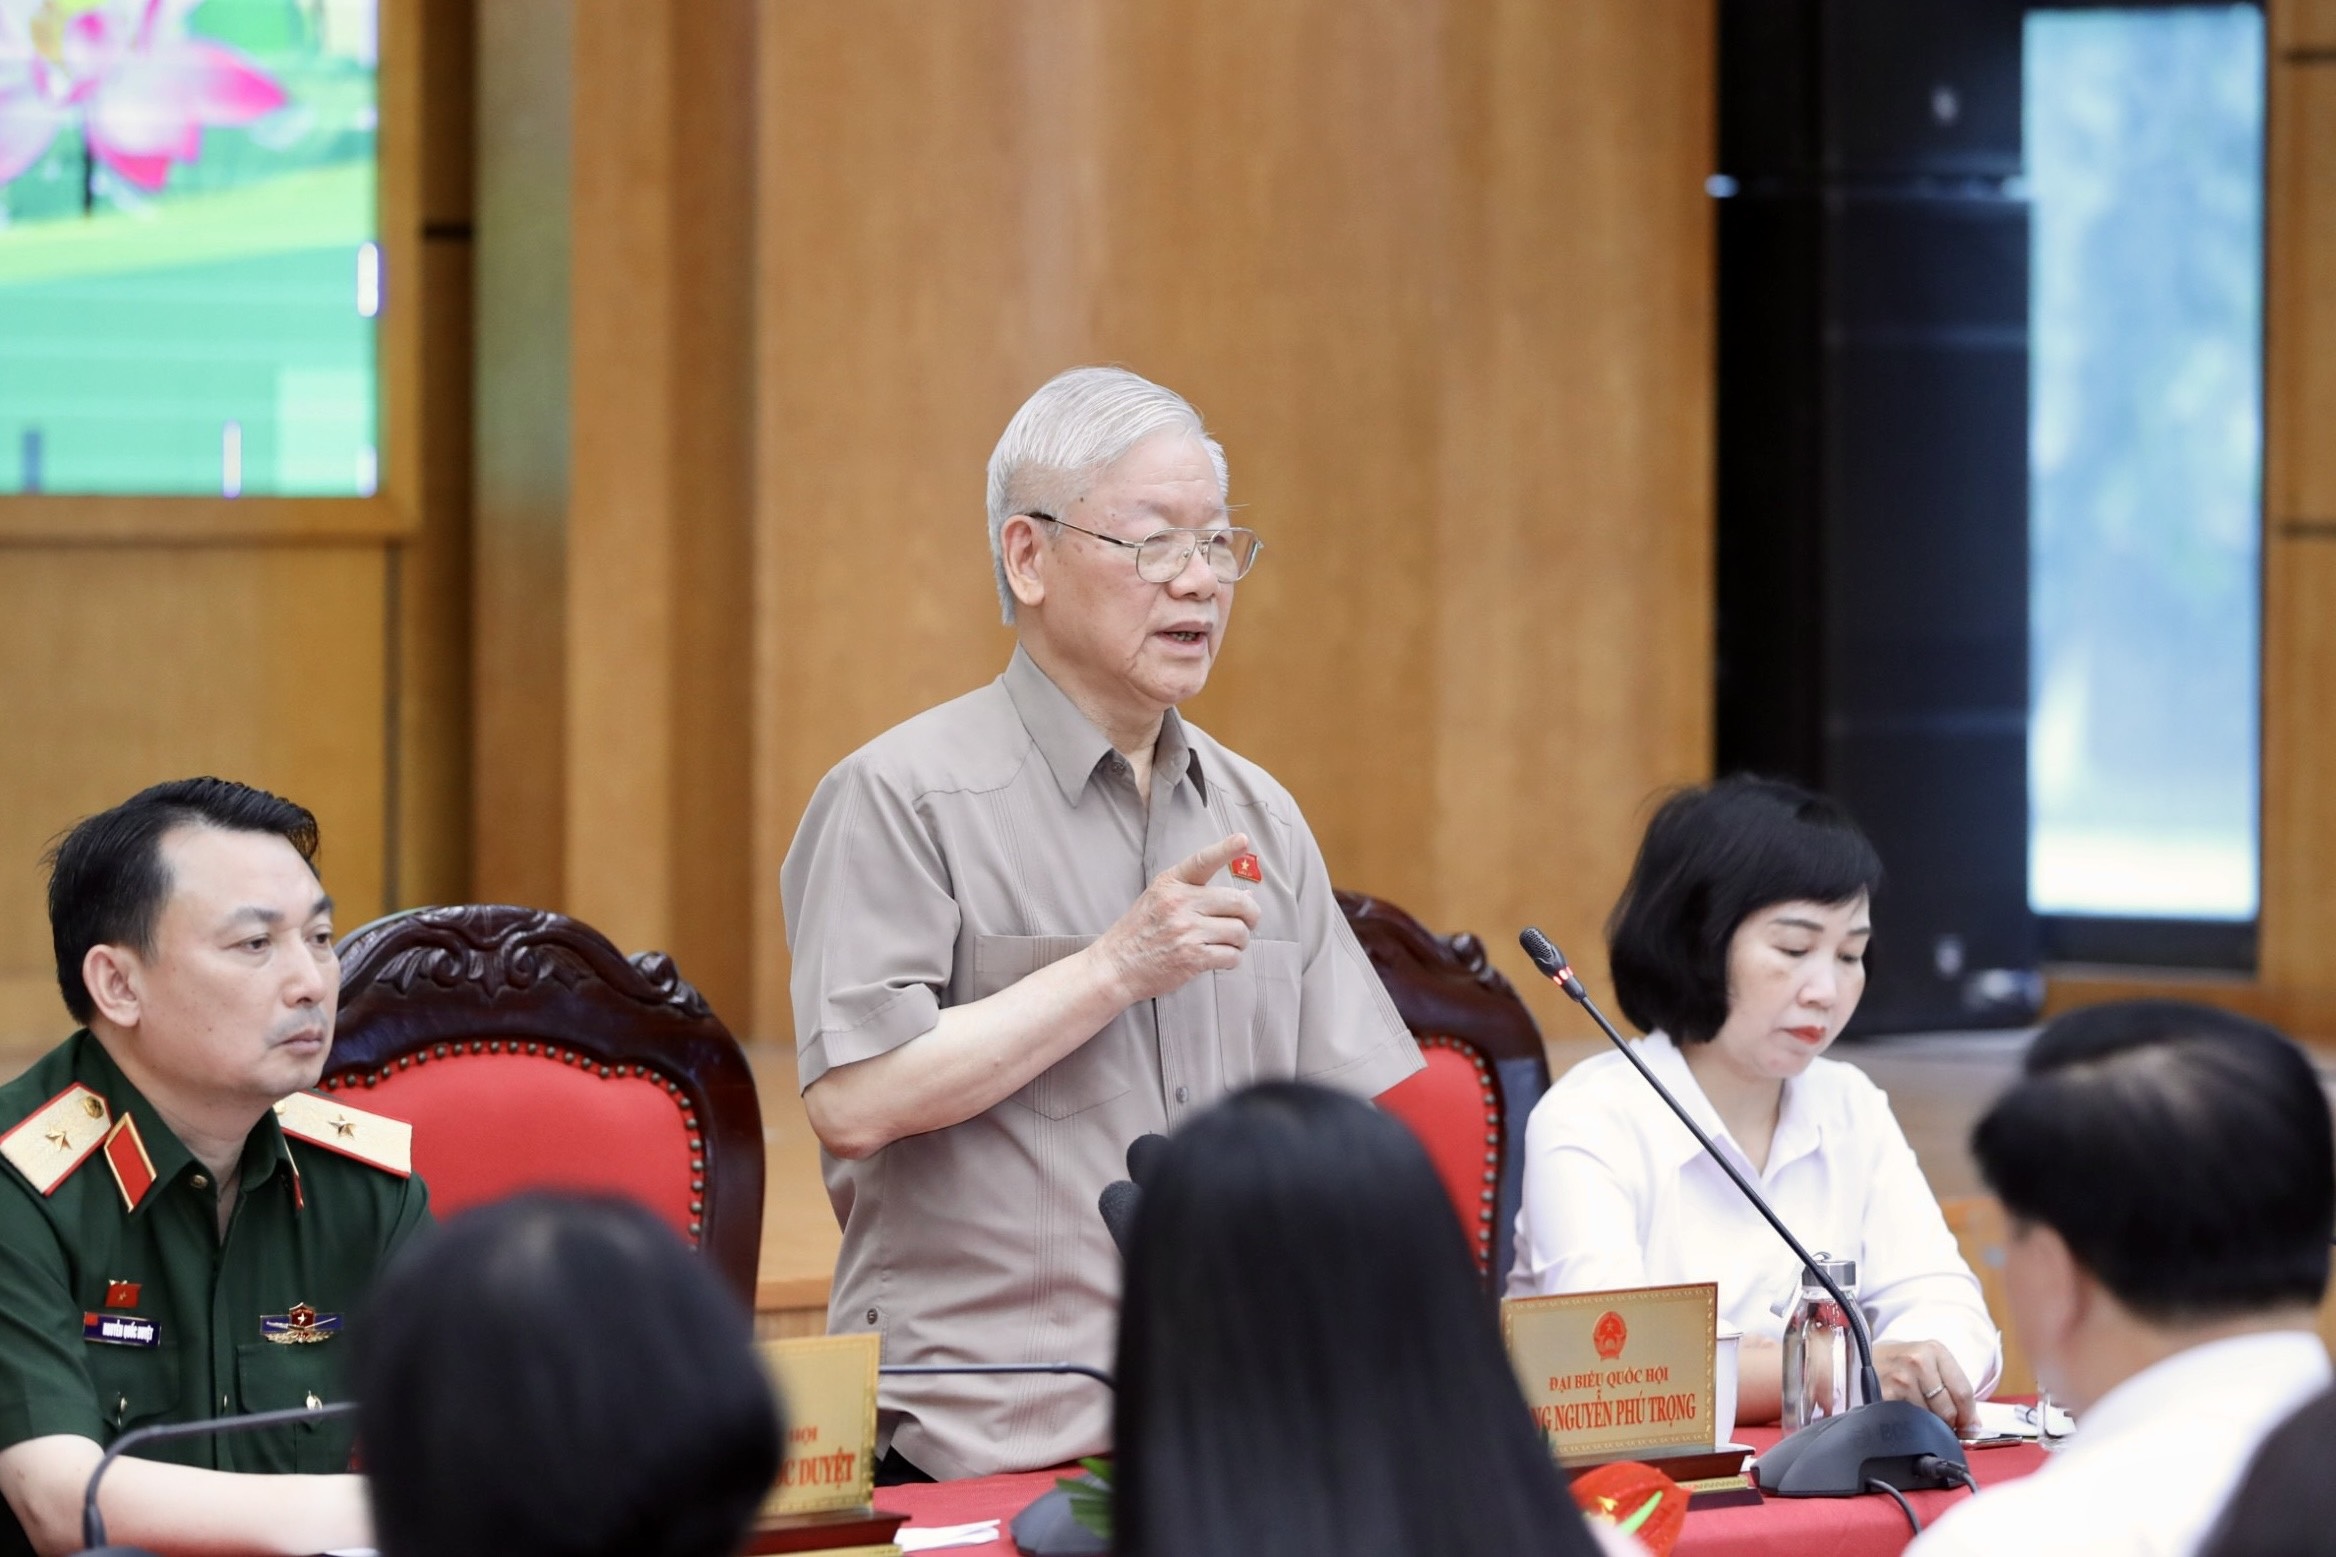 Tổng Bí thư: Ông Chu Ngọc Anh, Nguyễn Thanh Long đều hứa hẹn sẽ sửa chữa - 2